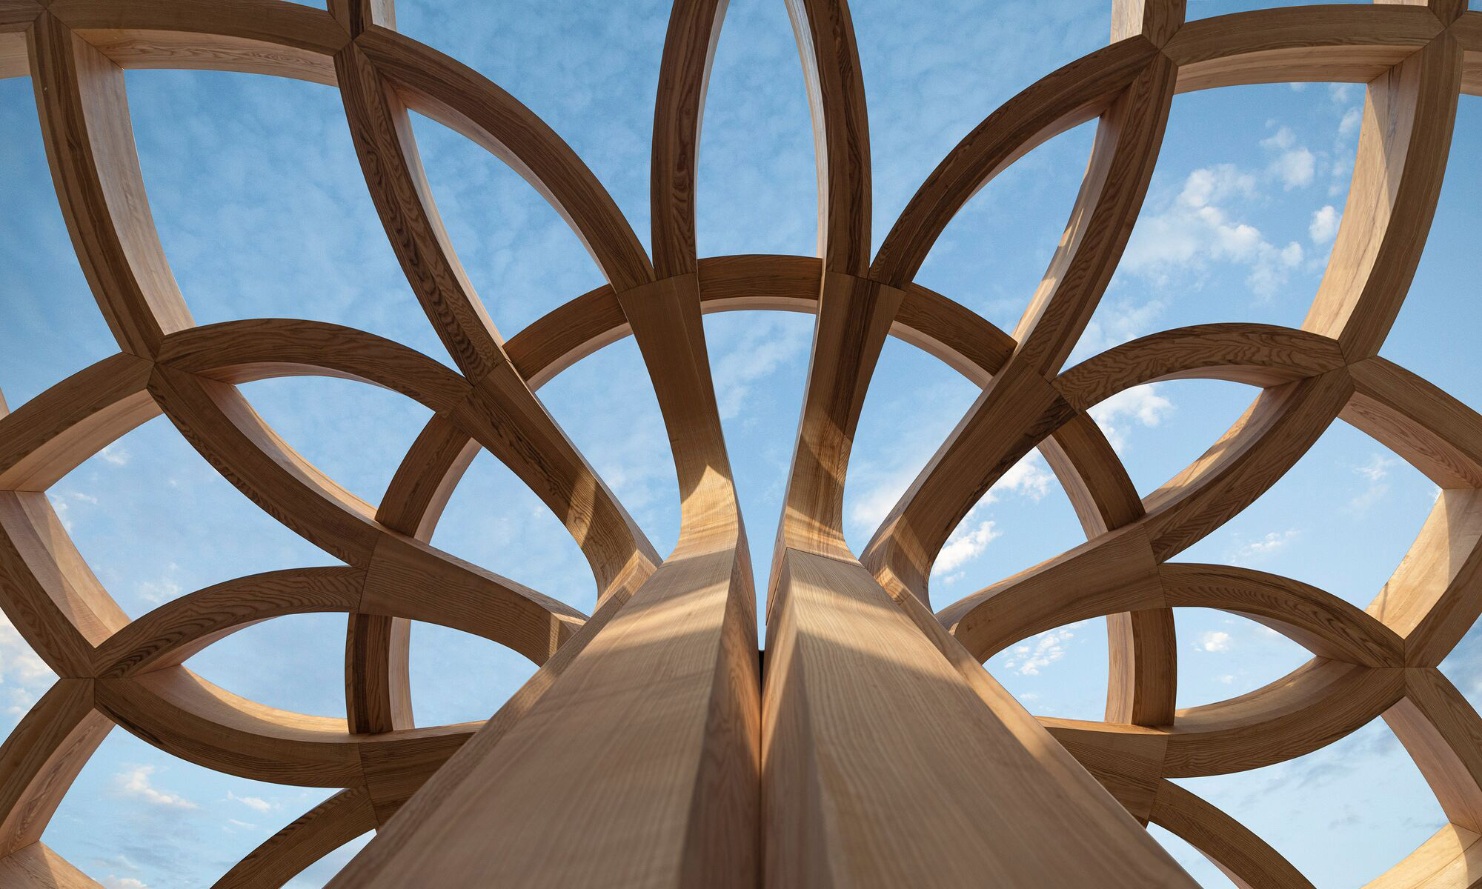 Free Form-Holzstruktur in Sonnenblumenform